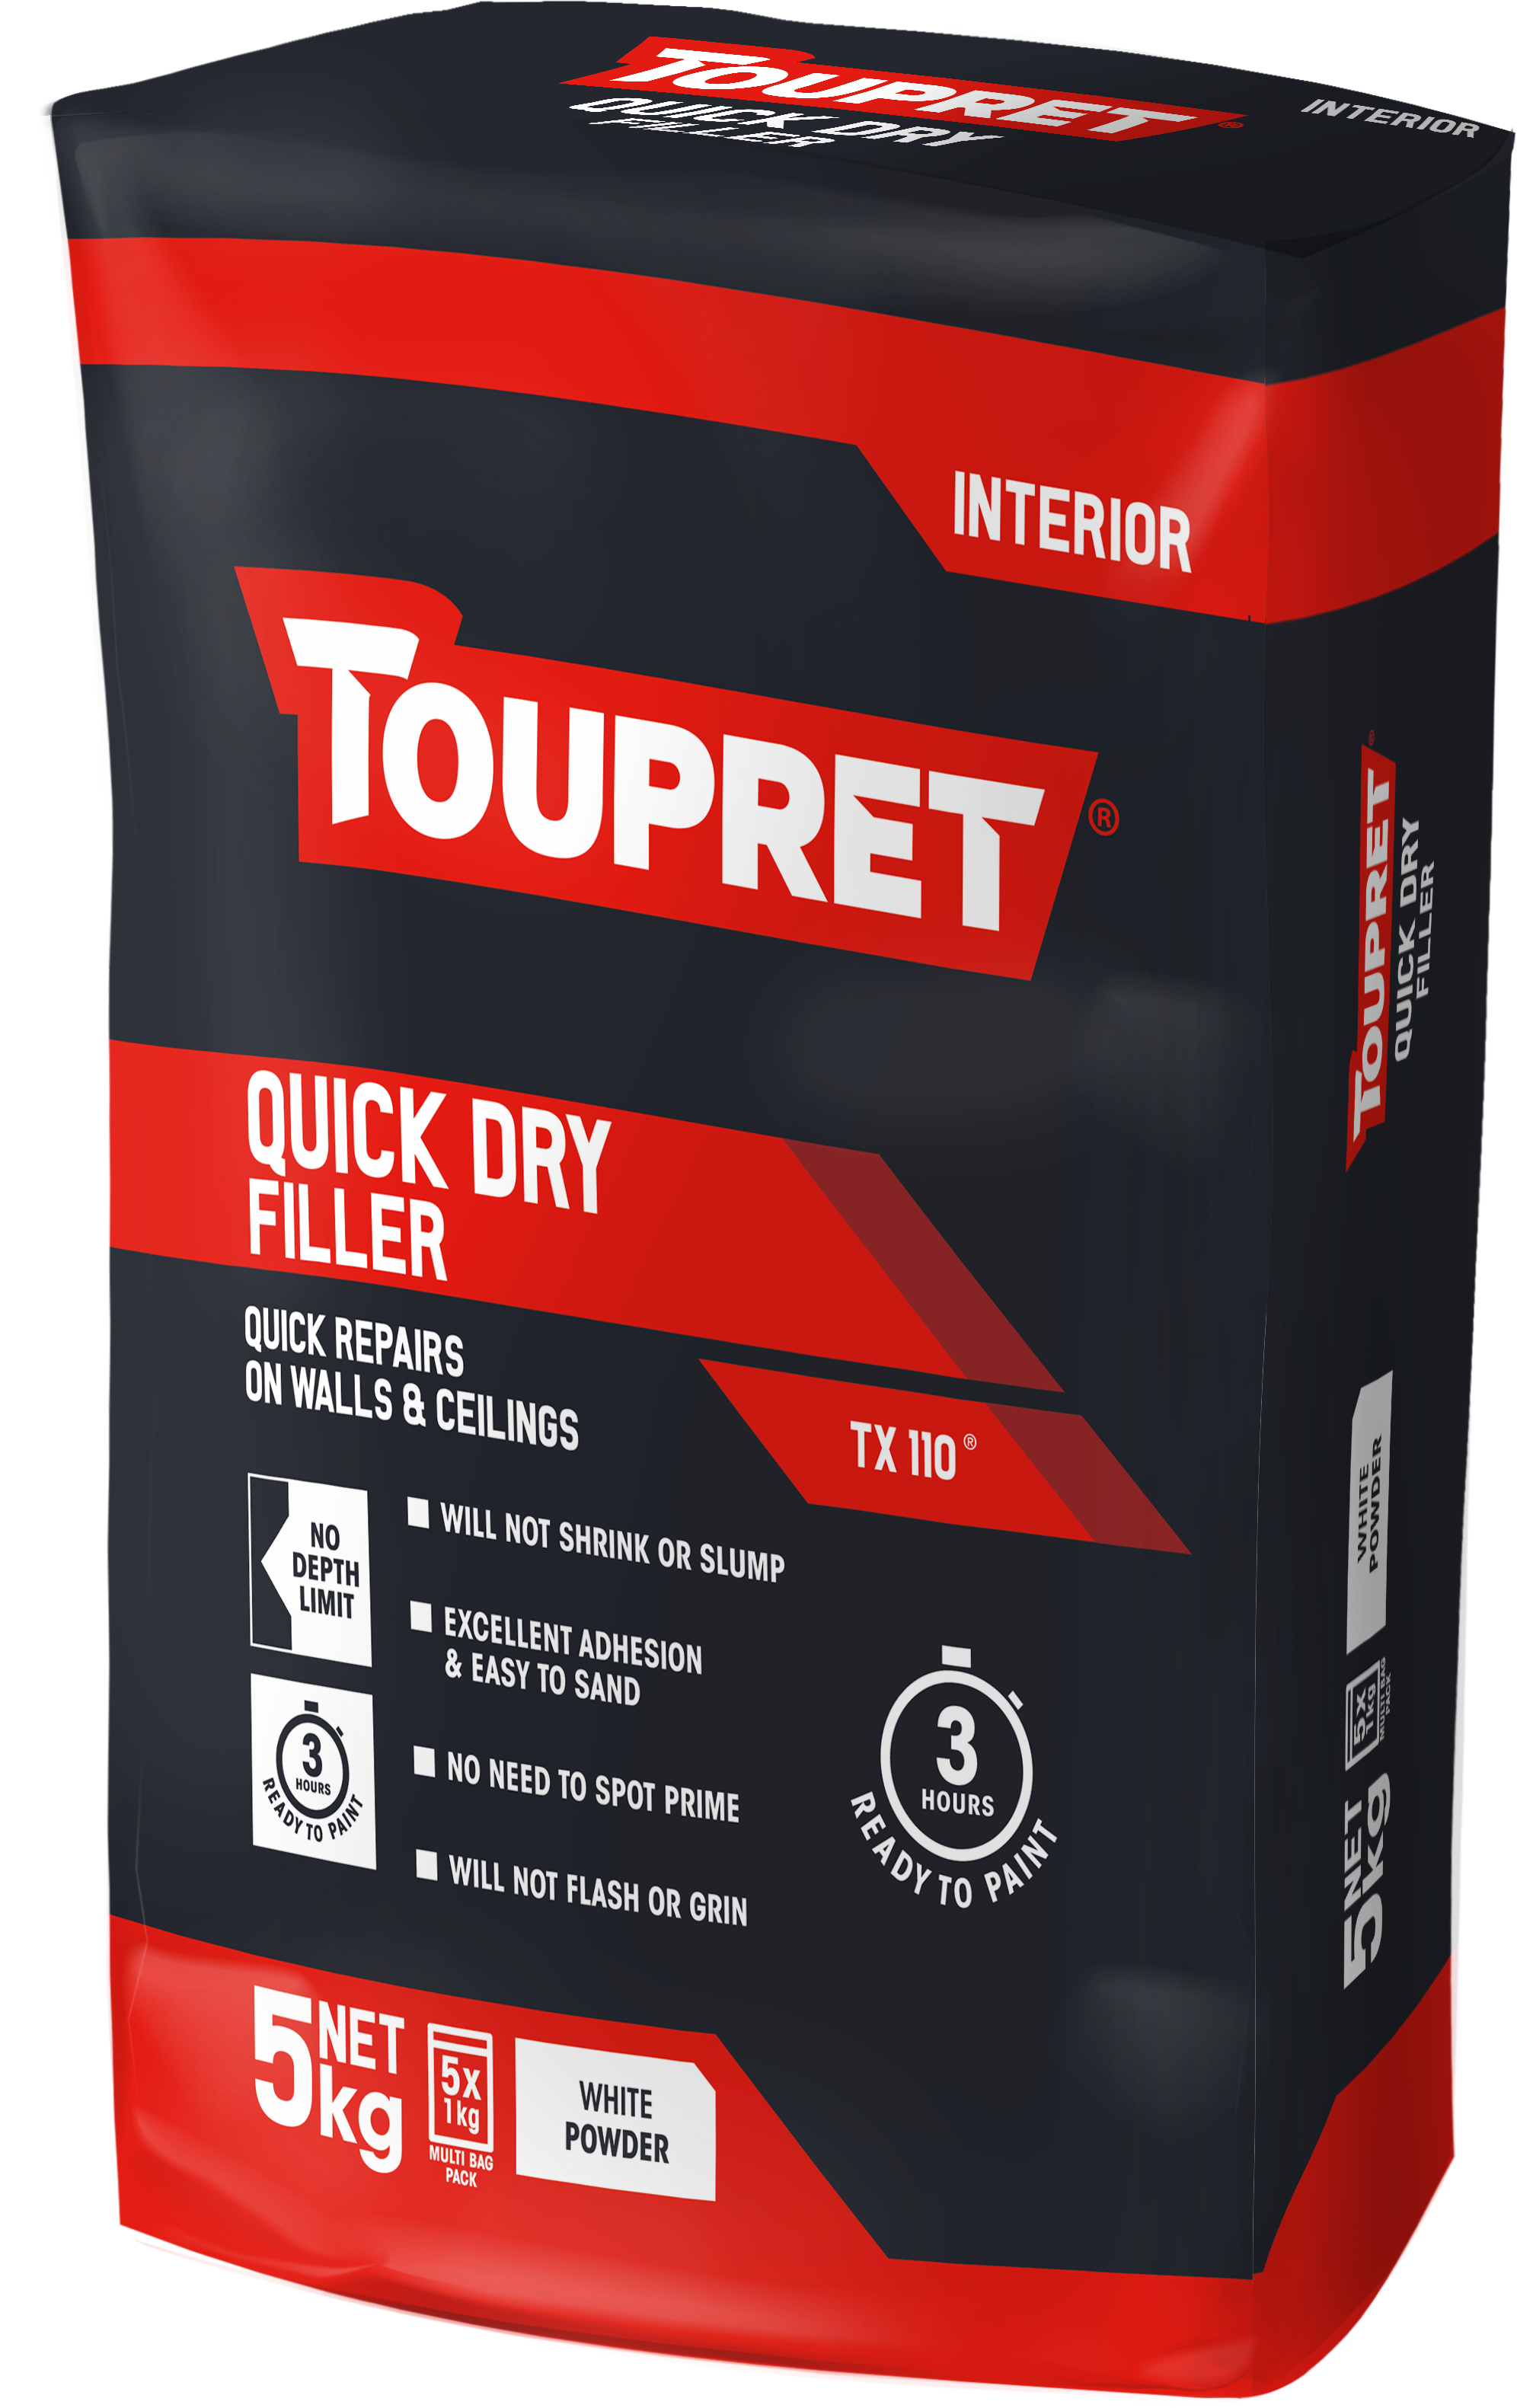 Toupret Quick Dry Filler (TX 110) 5x 1kg bag in bag